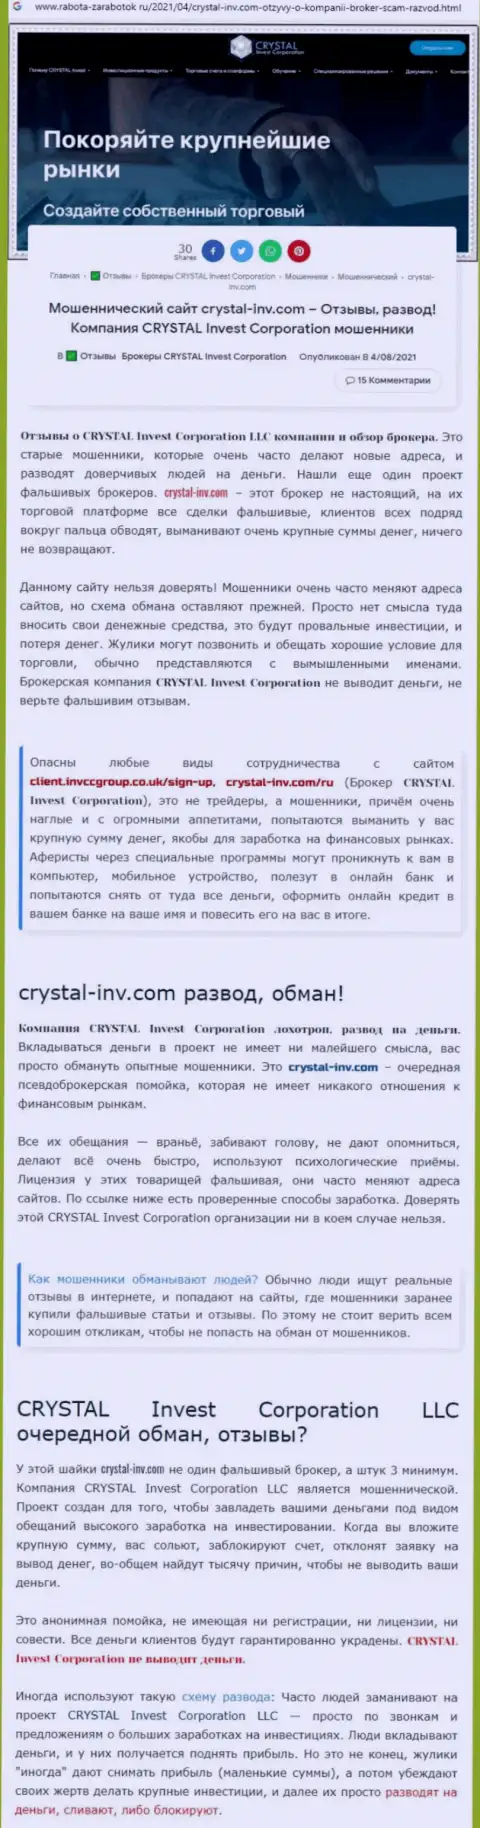 Материал, разоблачающий компанию Crystal Invest, взятый с ресурса с обзорами разных контор